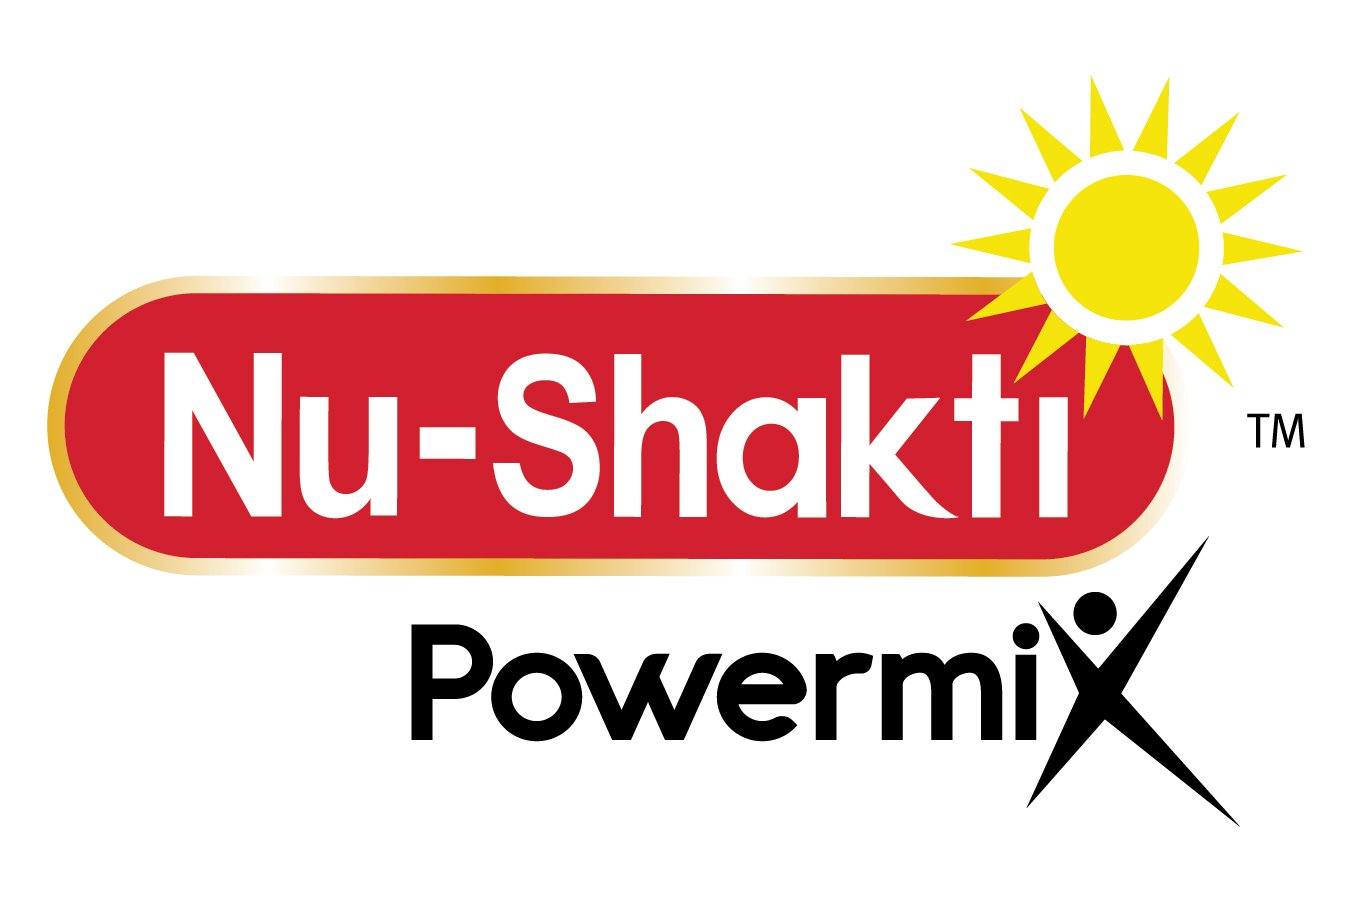 nu-shakti-urges-people-to-putimmunityfirst